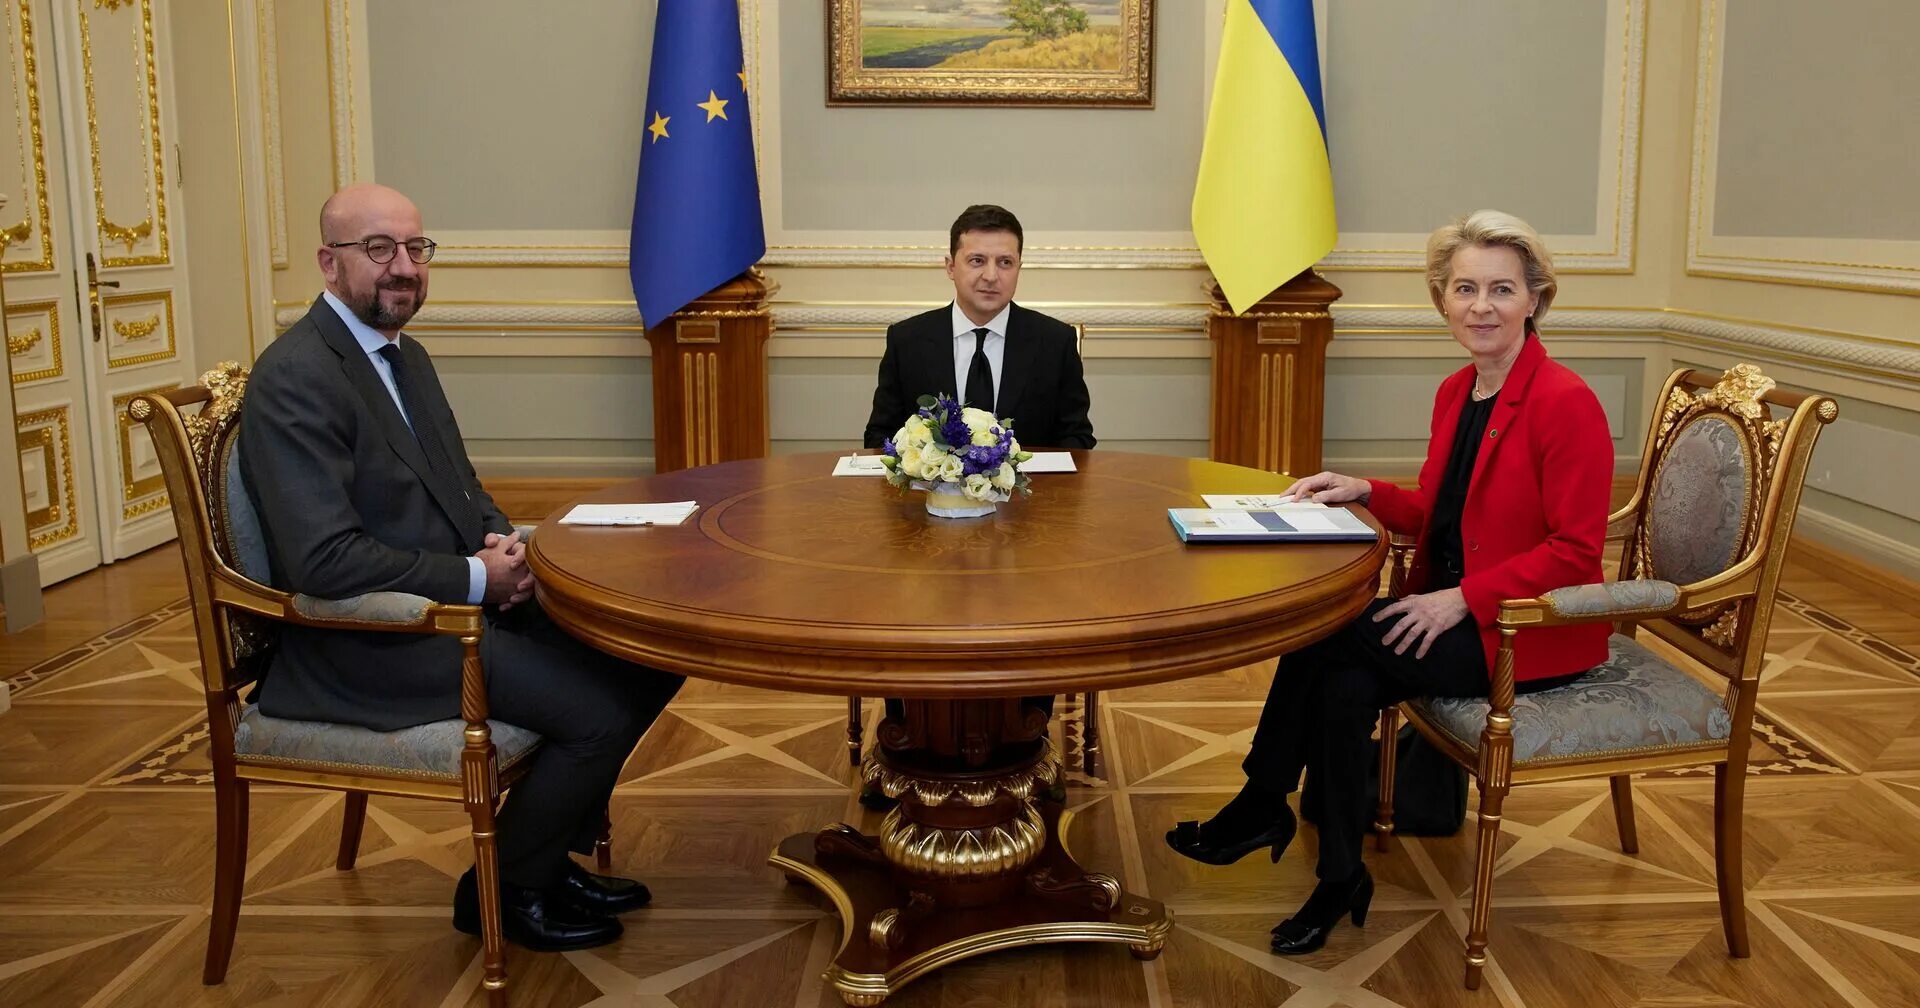 Саммит Украина ЕС. Фон дер Ляйен саммит Евросоюза. Украина Евросоюз.